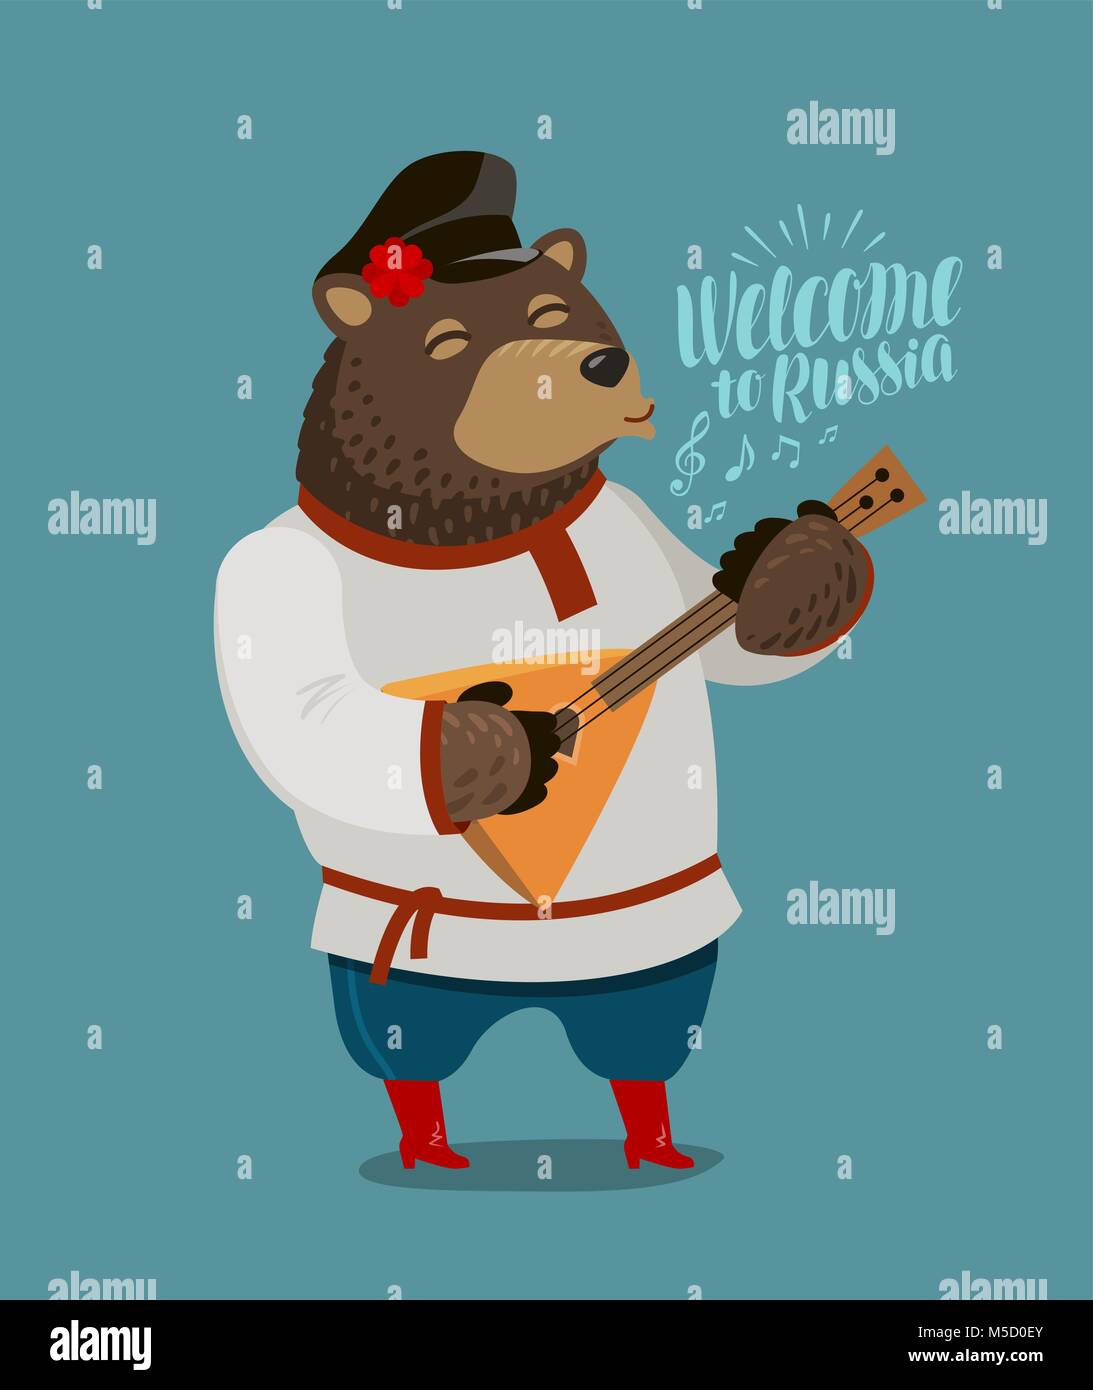 Funny orso russo suona sulla balalaika. Russia, Mosca concetto. Fumetto illustrazione vettoriale Illustrazione Vettoriale